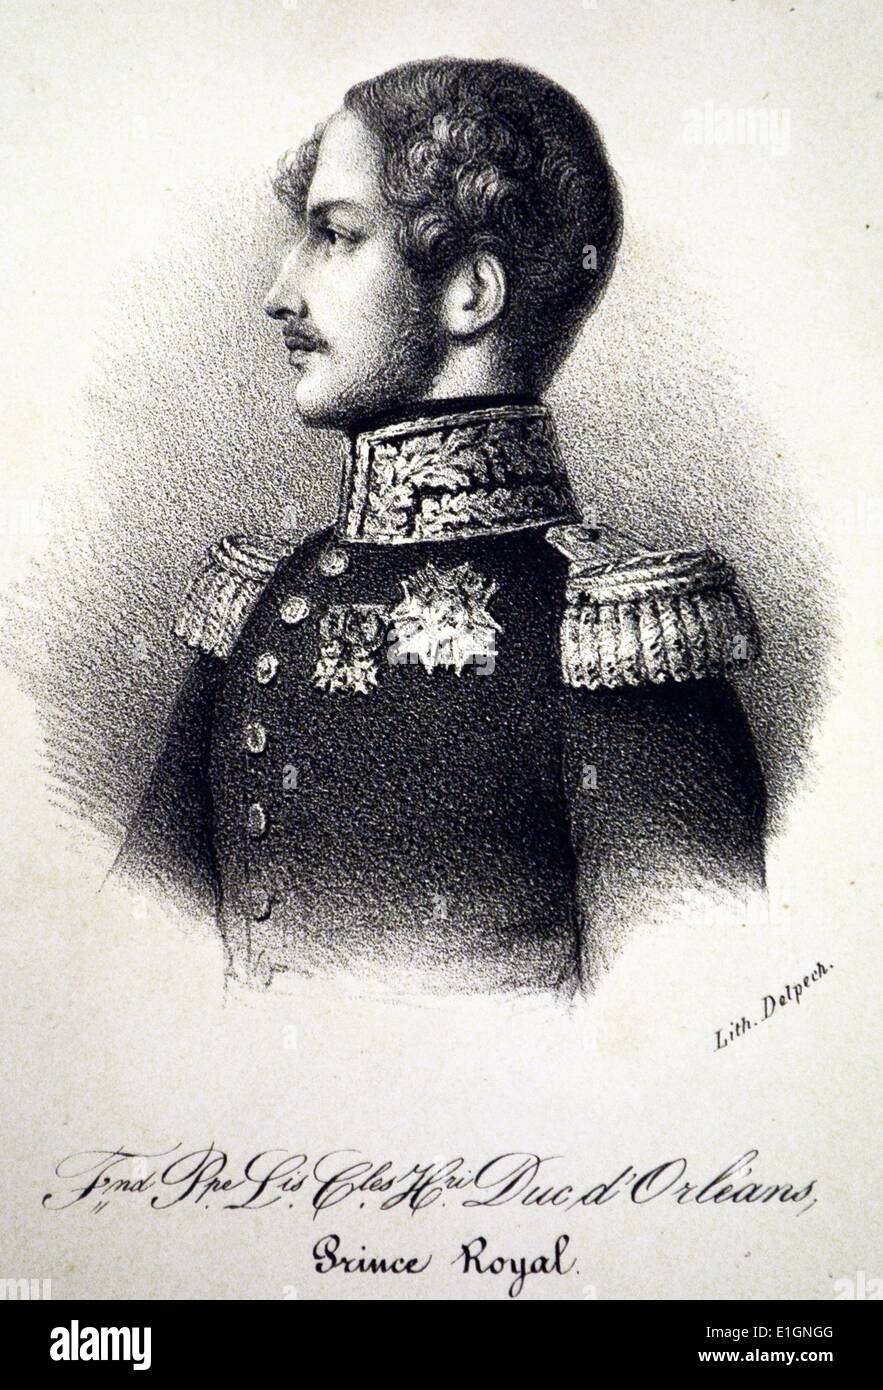 Ferdinand Philippe di Orleans, Prince Royal (1810-1842), primogenito di Louis Philippe I di Francia. Lithograh, Parigi, c1840. Foto Stock